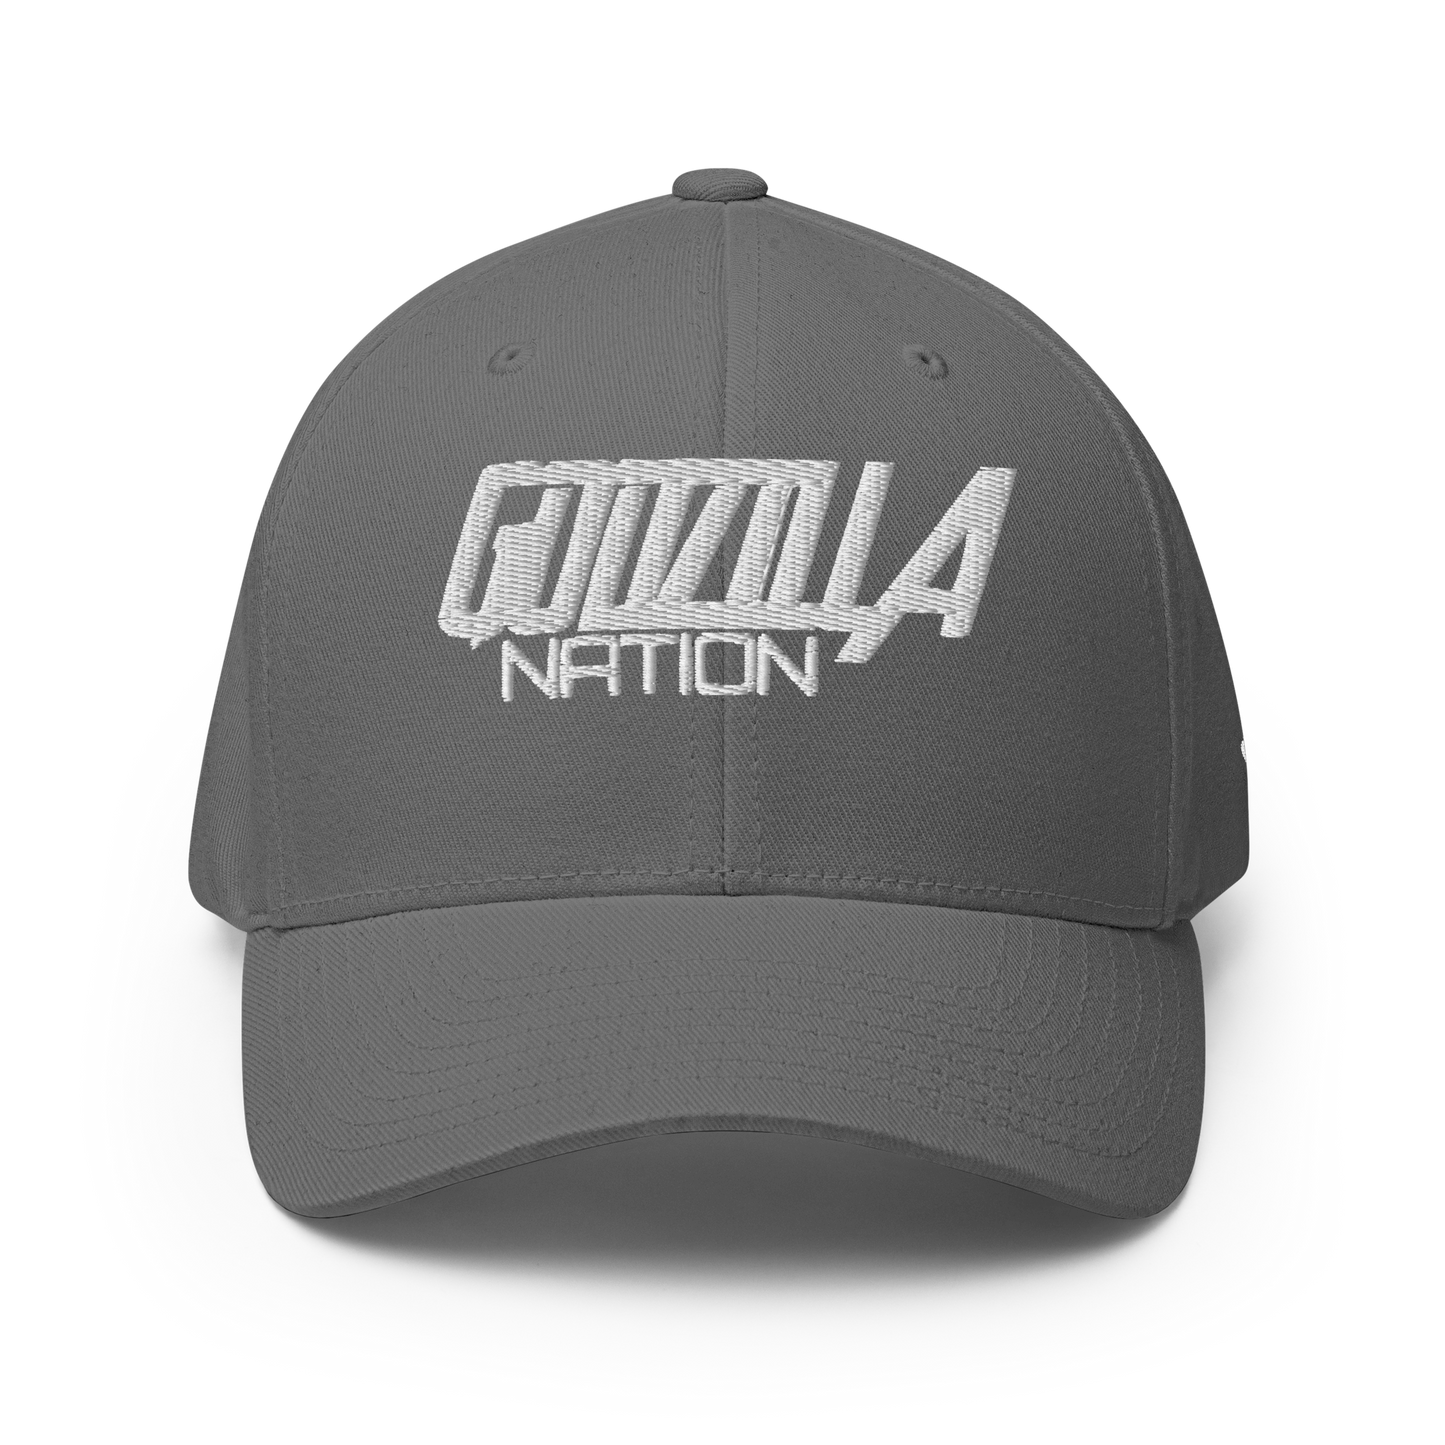 GODZILLA NATION - Flexfit Cap